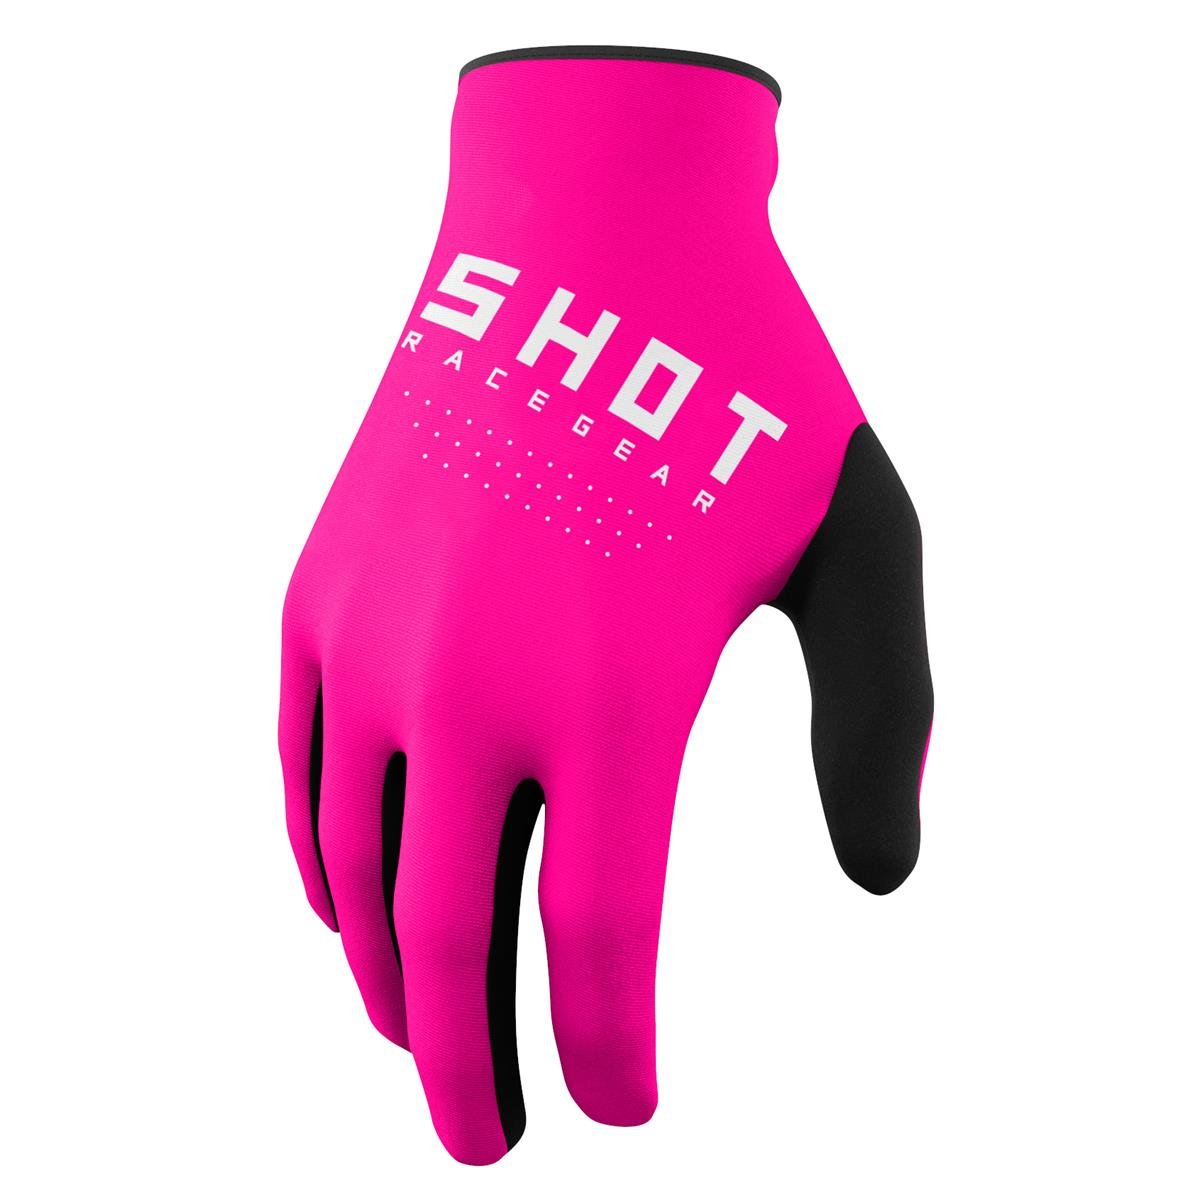 Shot Gloves Raw Pink